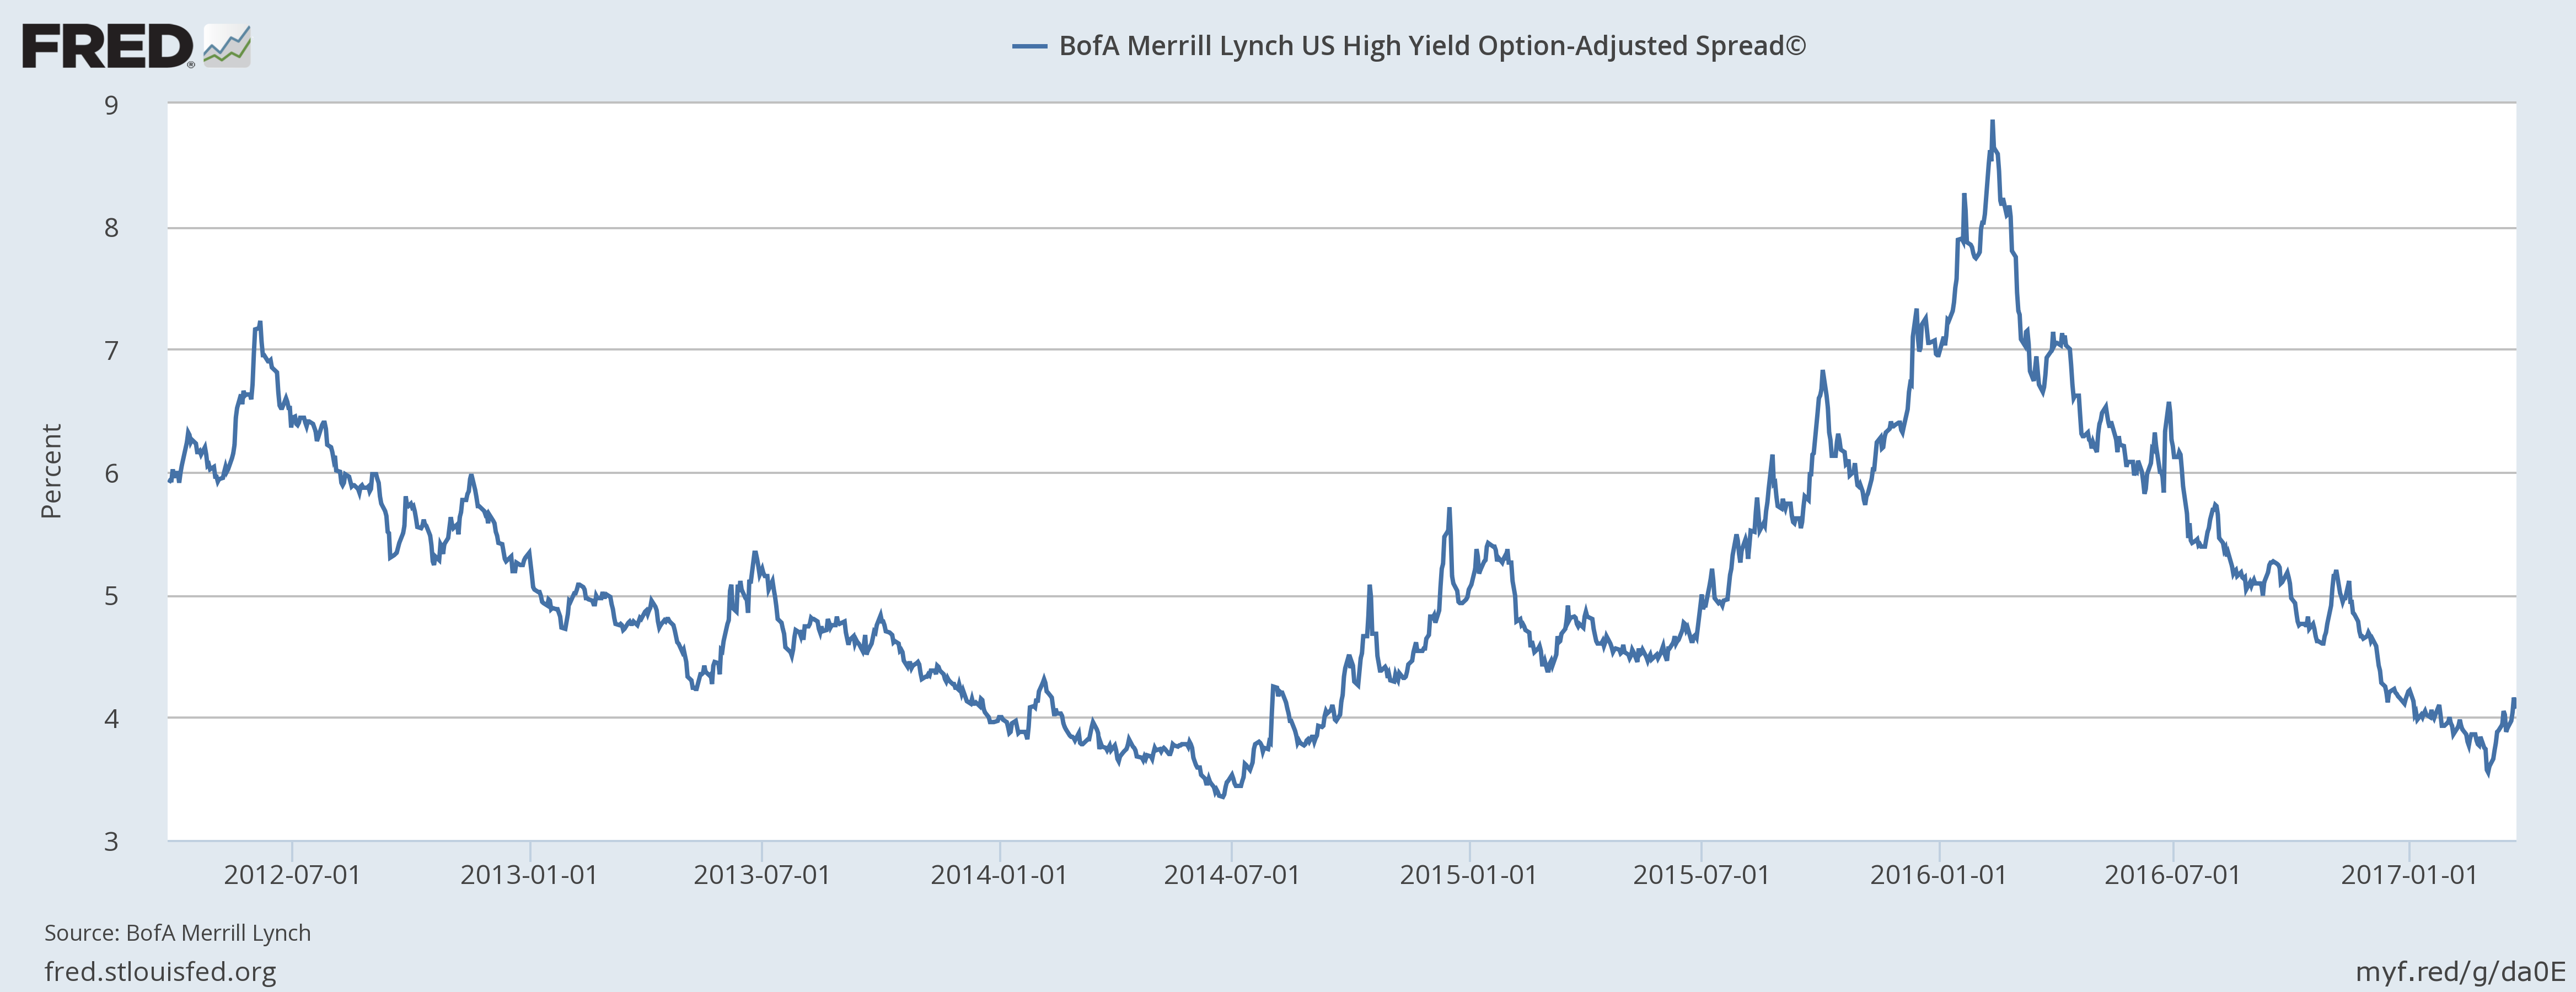 BofA Merrill Lynch US High Yield Option-Adjusted Spread